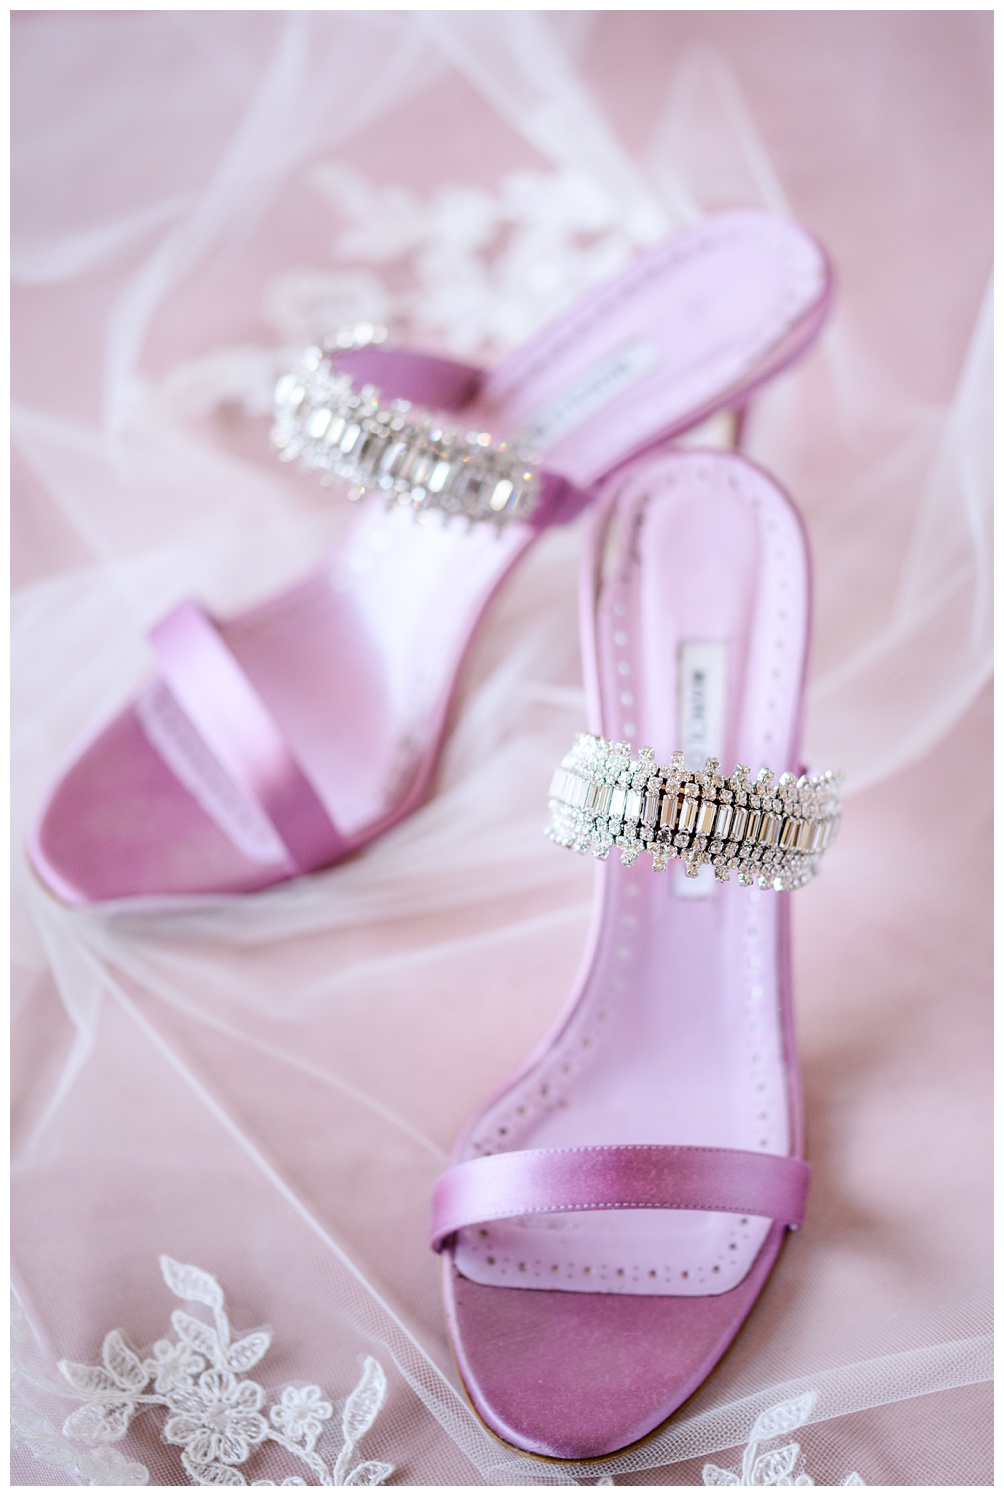 manolo blahnik wedding heels in lavender